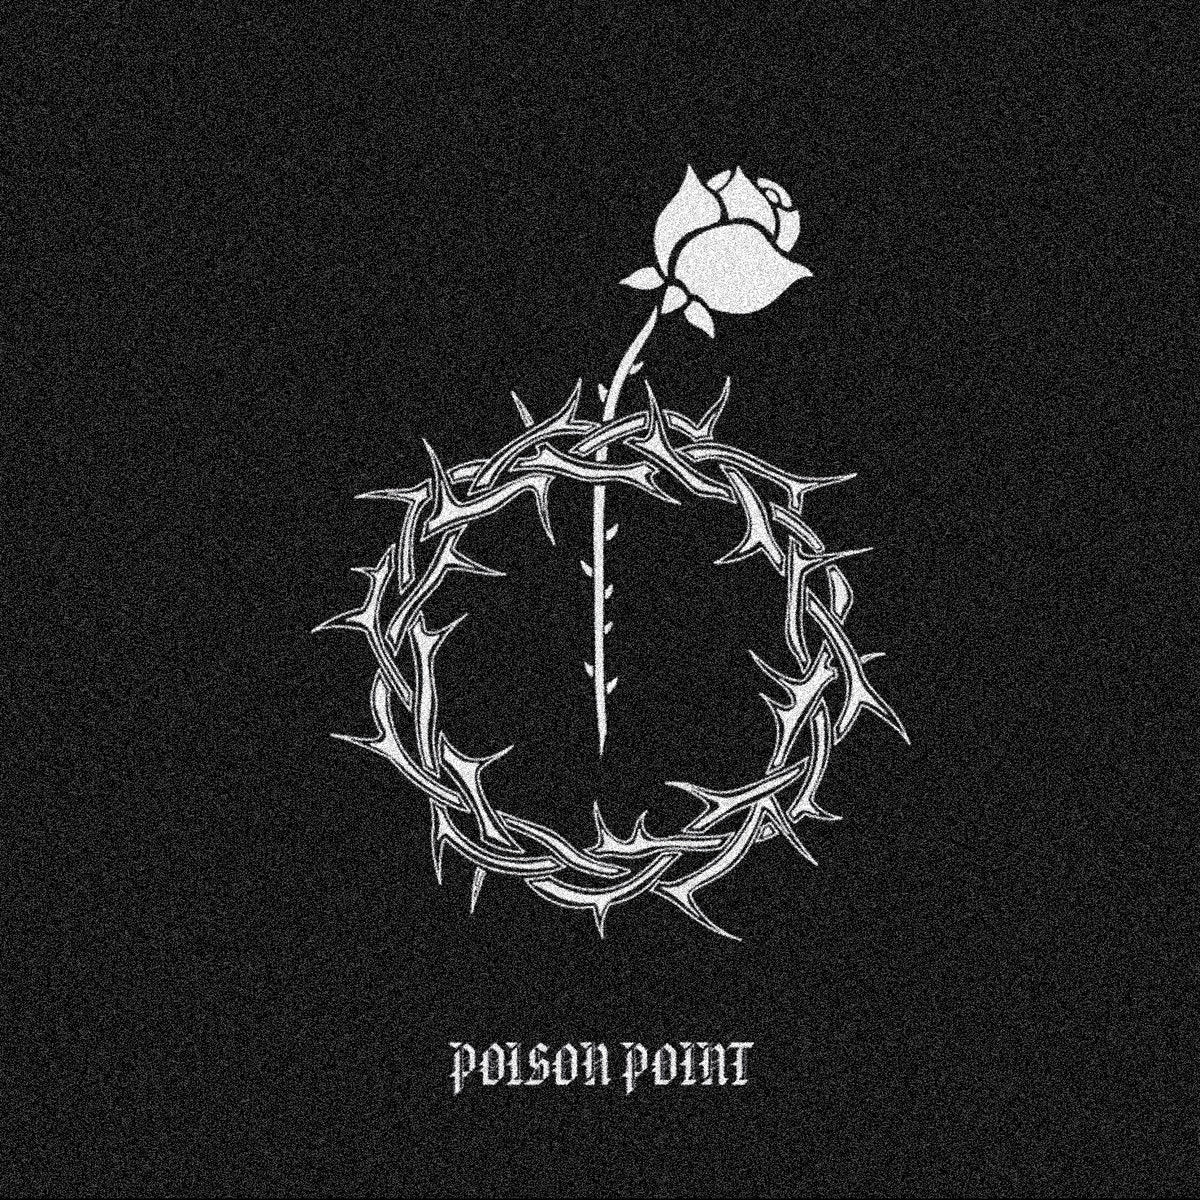 POISON POINT "Poisoned Gloves" LP